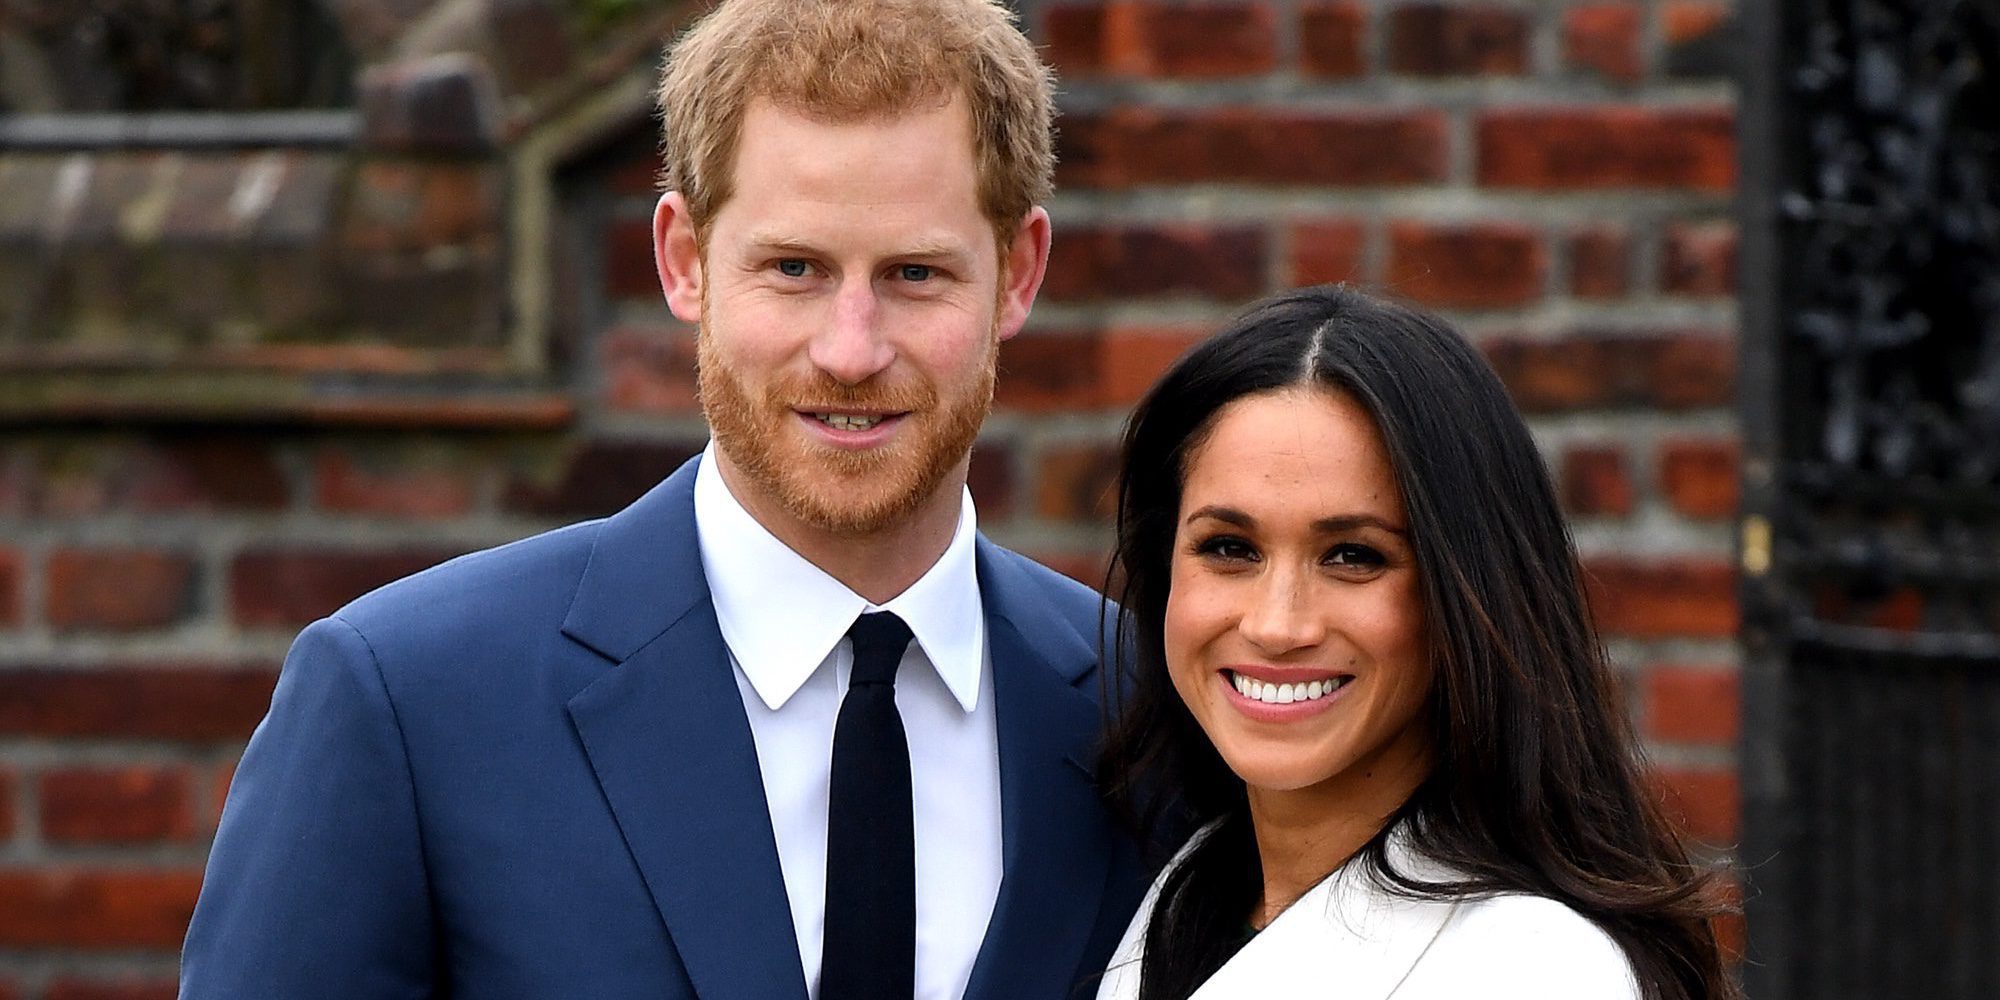 La fiebre por la boda del Príncipe Harry y Meghan Markle provoca el lleno absoluto en Windsor para el 19 de mayo